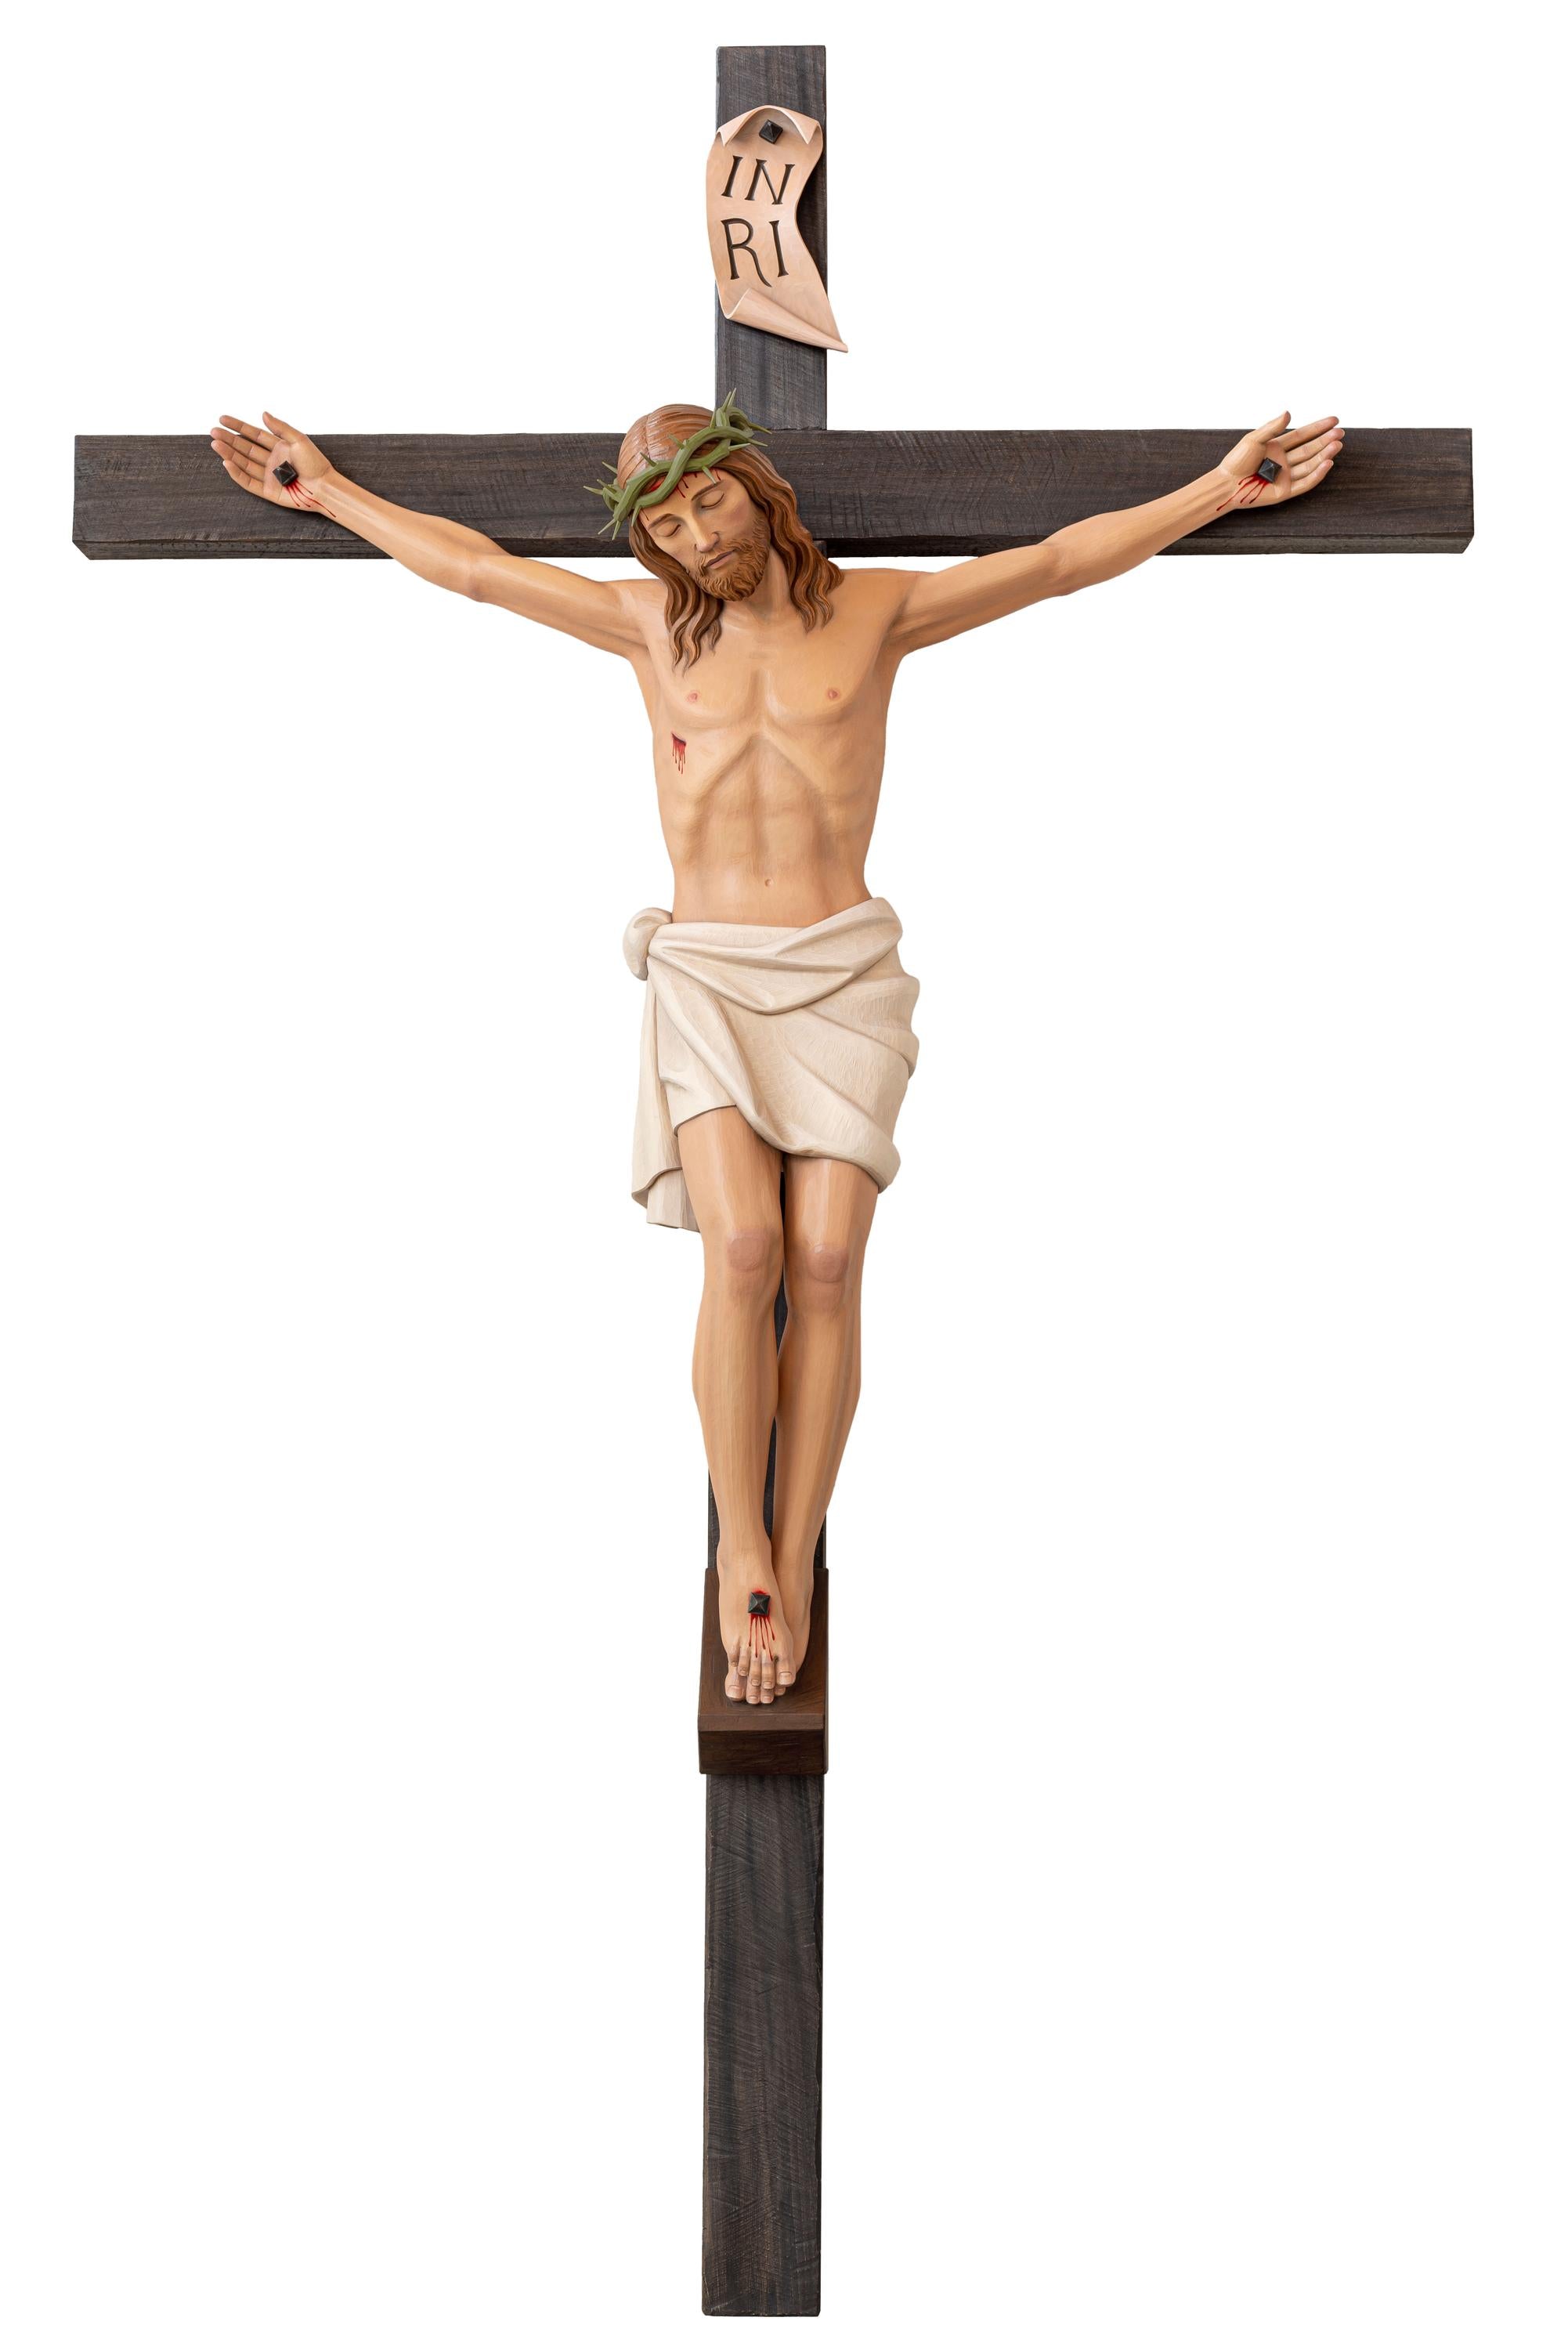 crucifix-demetz-italian-290-15.jpg